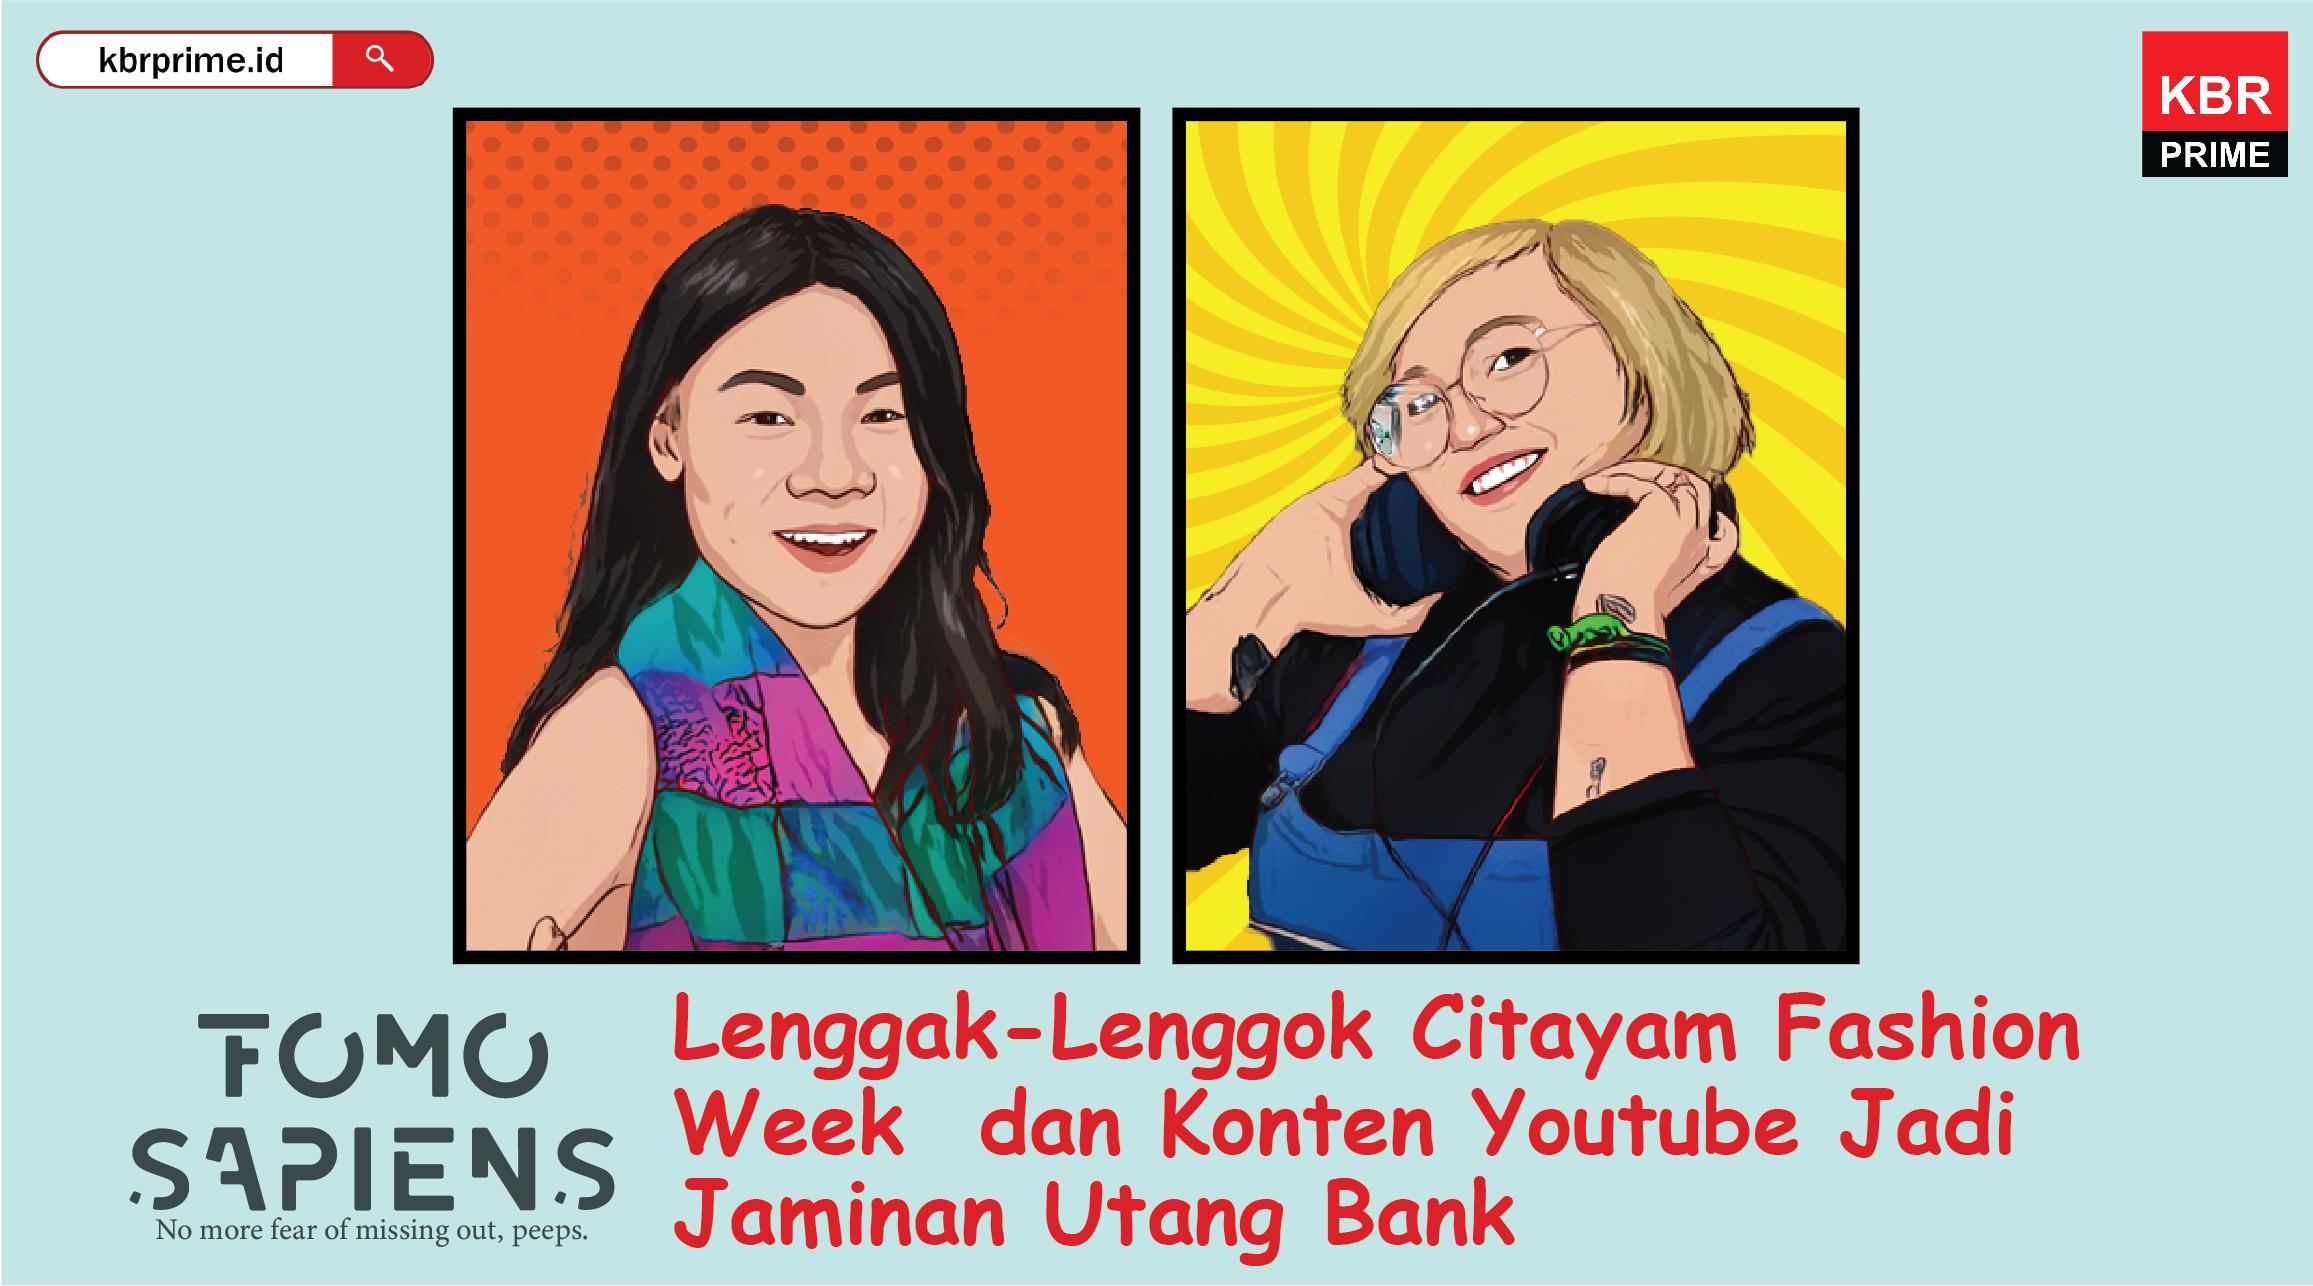 FOMO Sapiens : Lenggak-Lenggok Citayam Fashion Week dan Konten Youtube Jadi Jaminan Bank